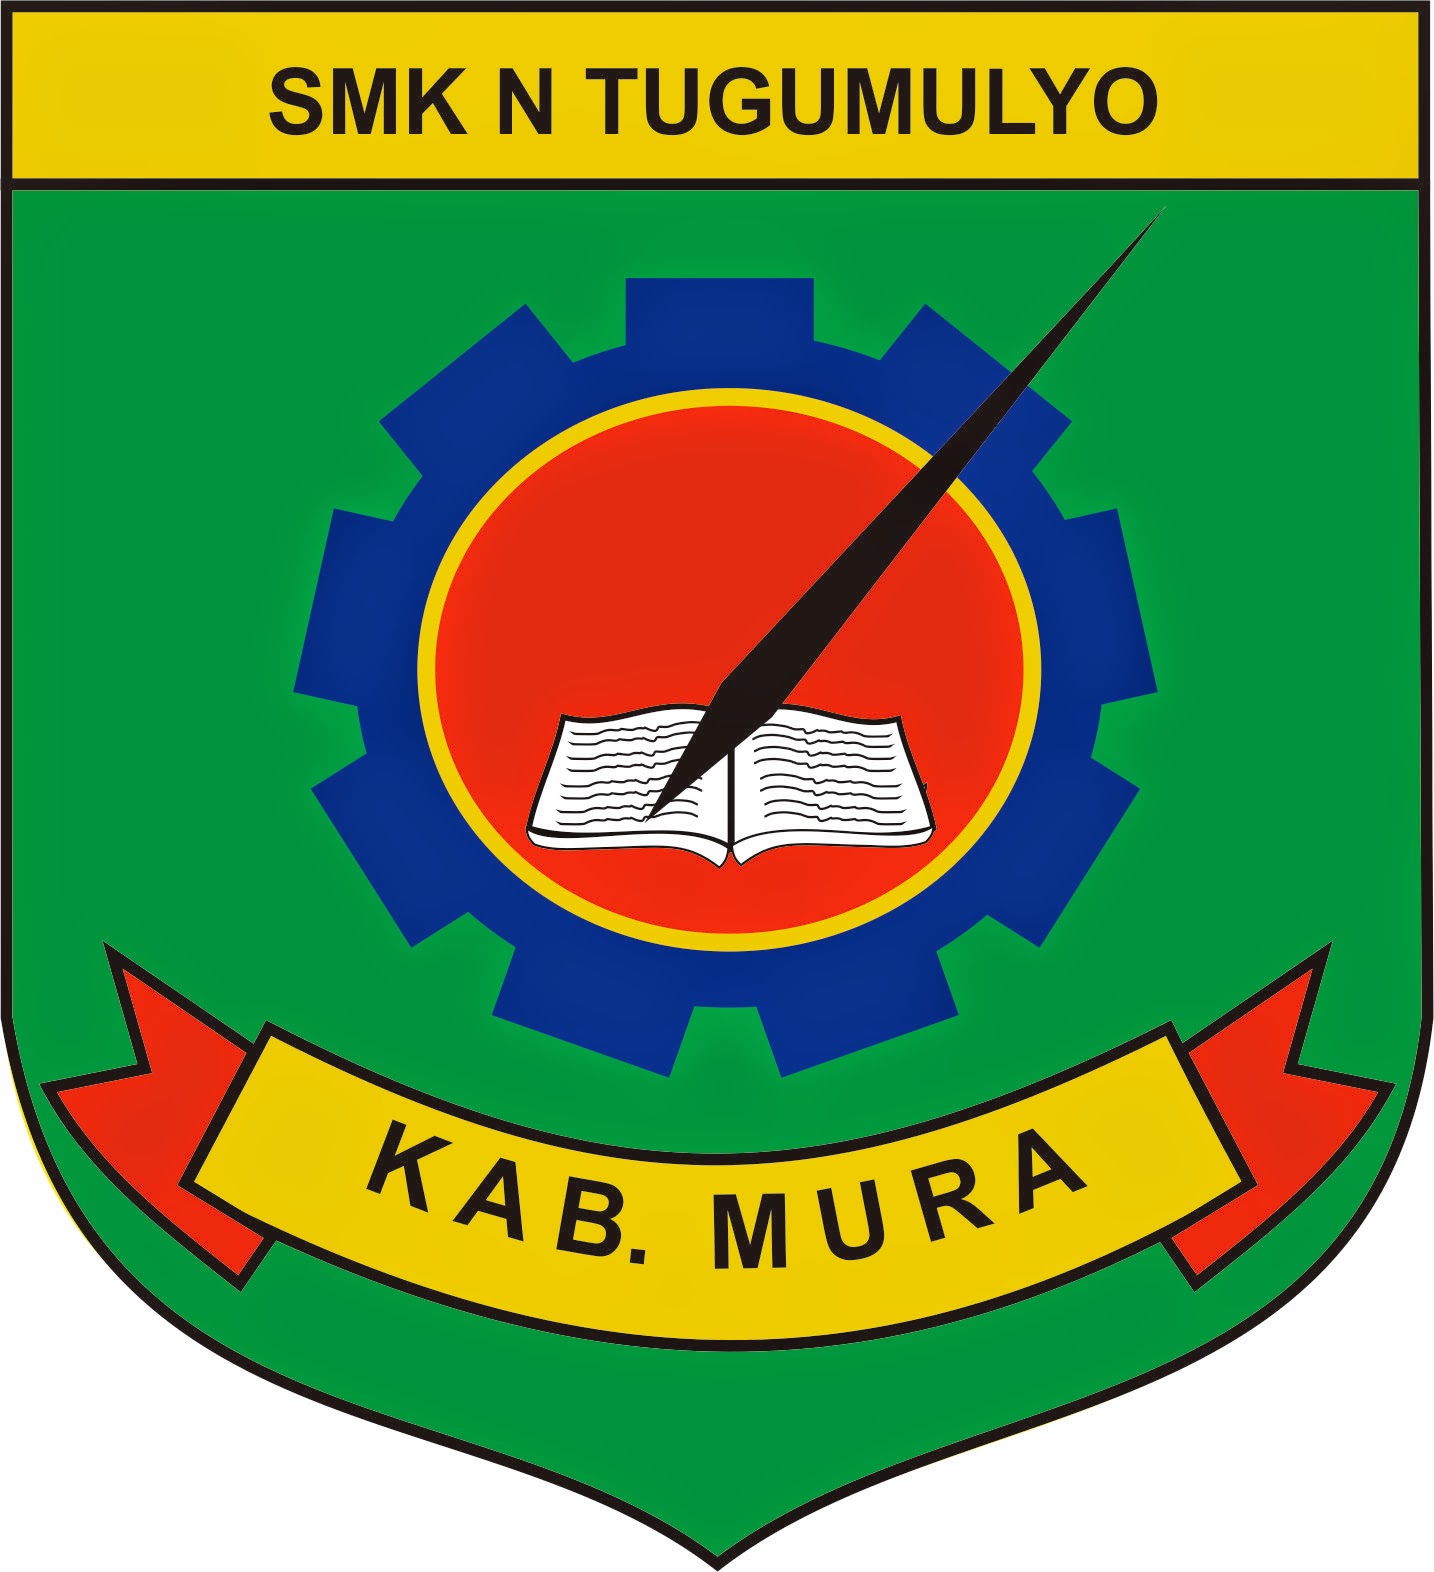 Logo SMK Negeri Tugumulyo dan maknanya - Asep Zaenuri